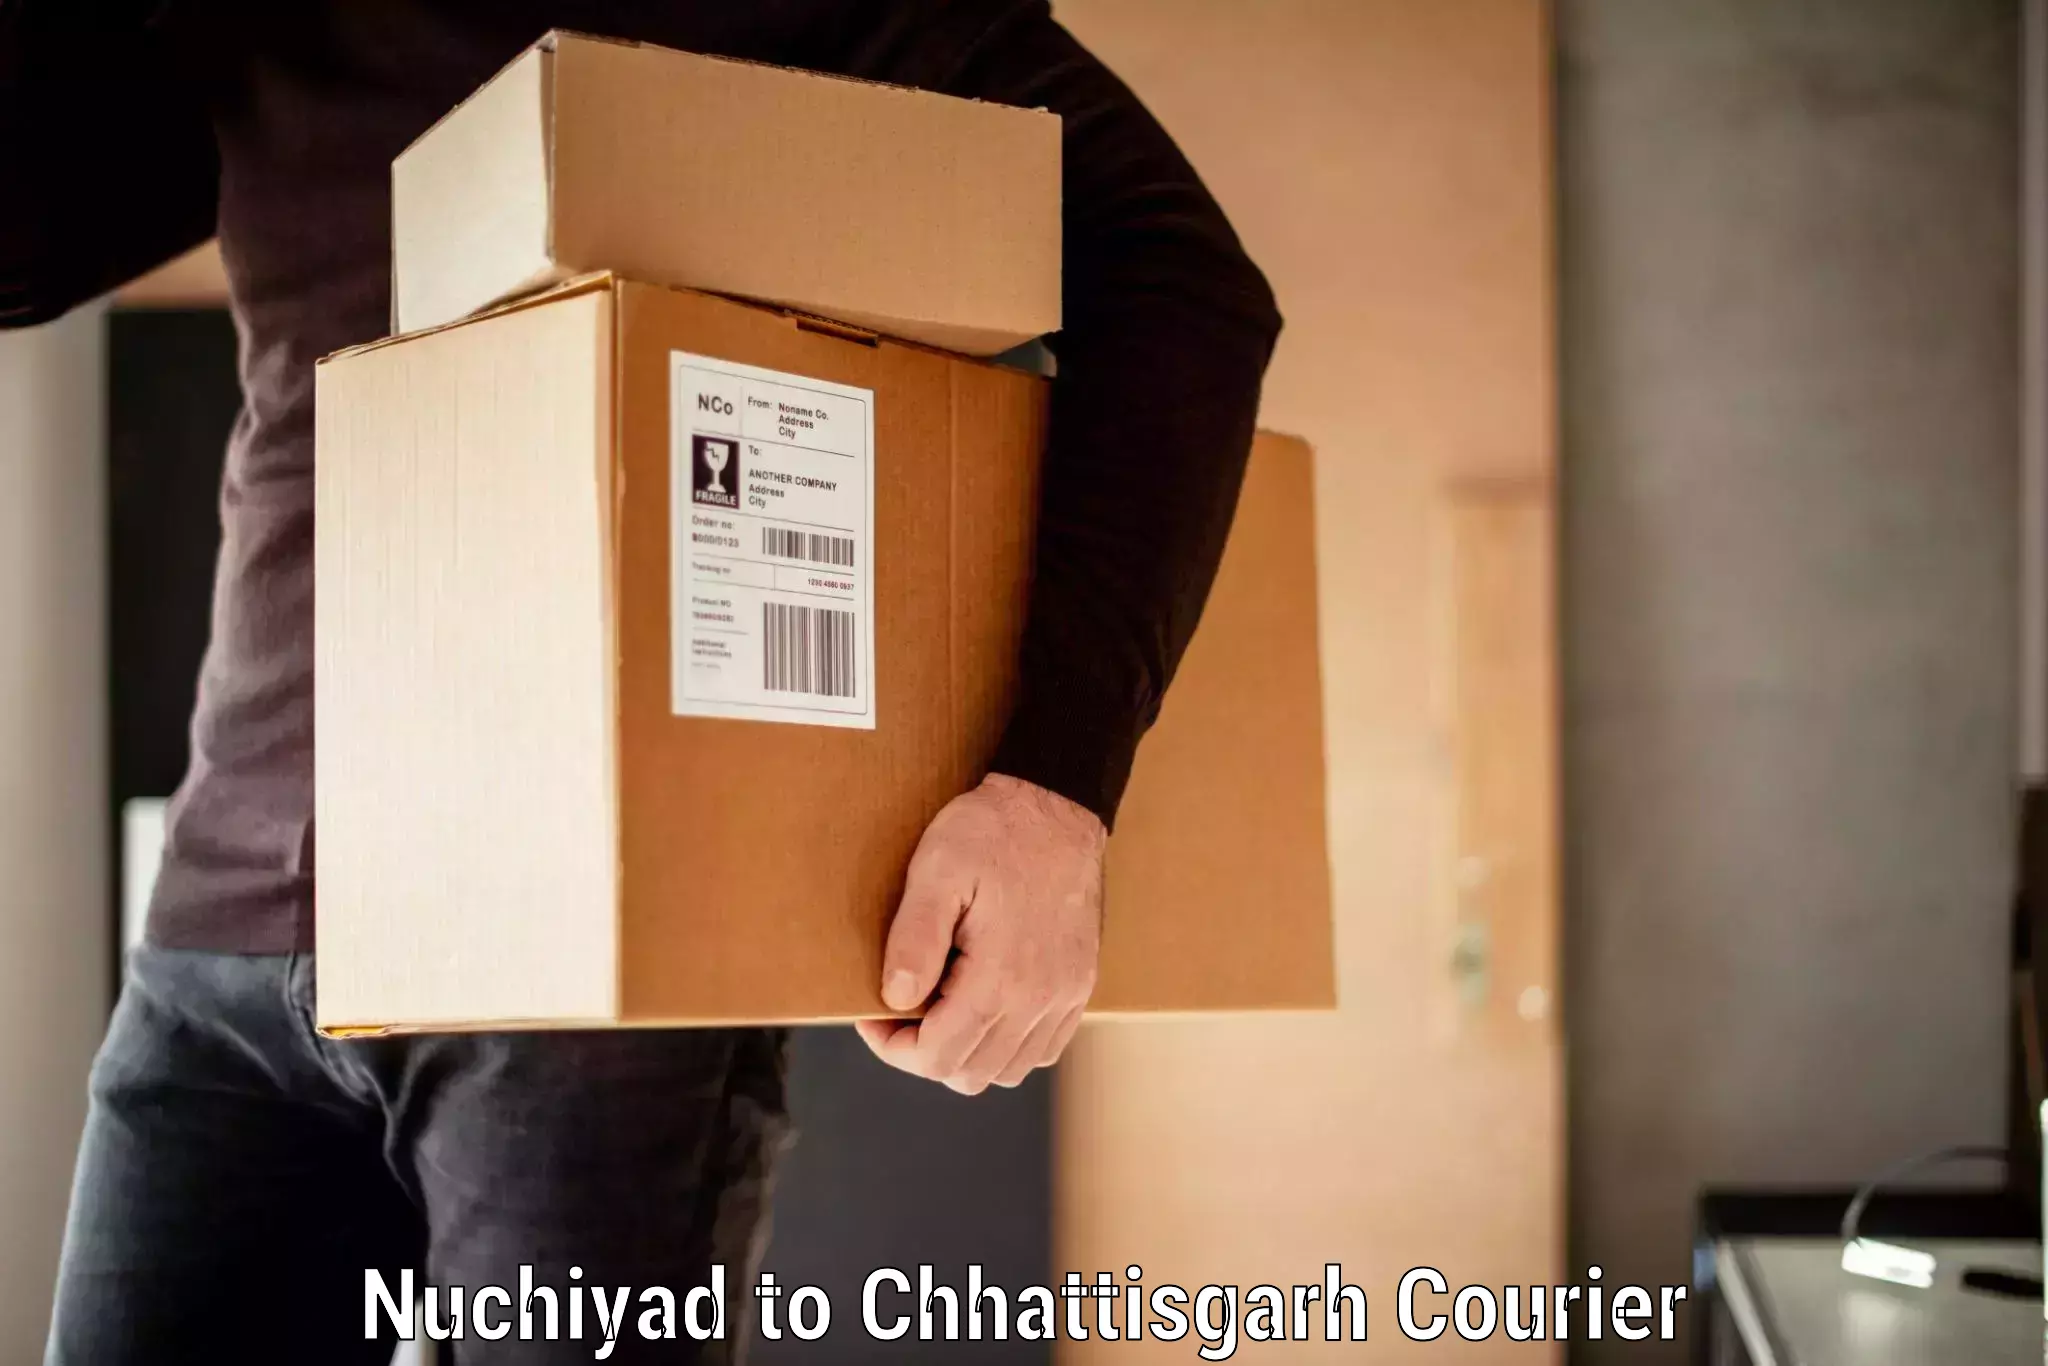 Baggage shipping experts Nuchiyad to Nagri